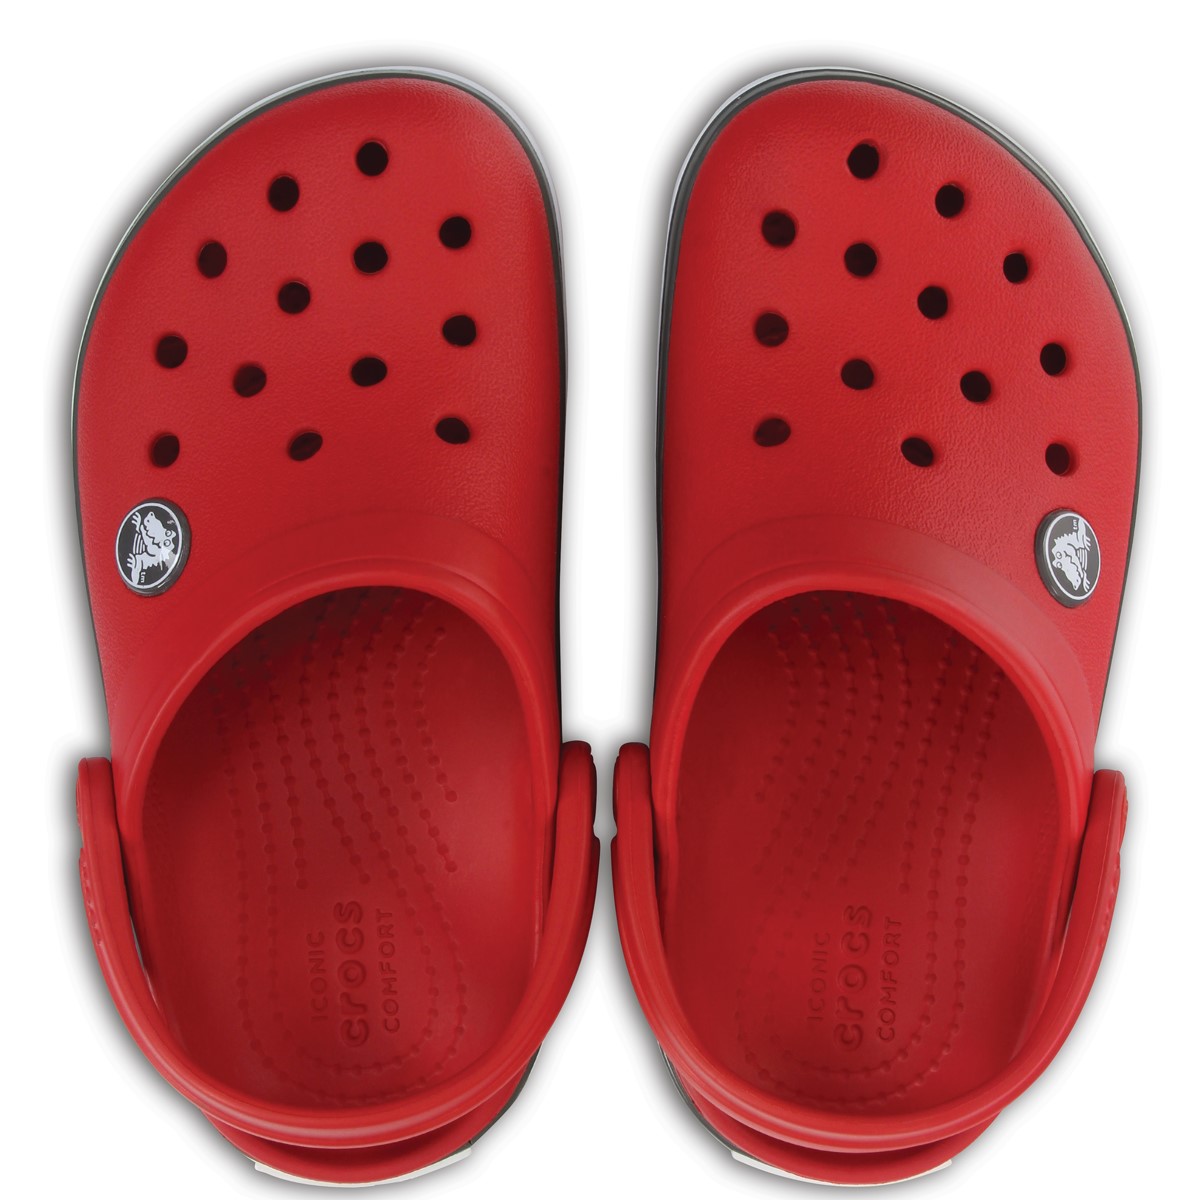 Crocs Sandalet 204537 Pepper/Graphite